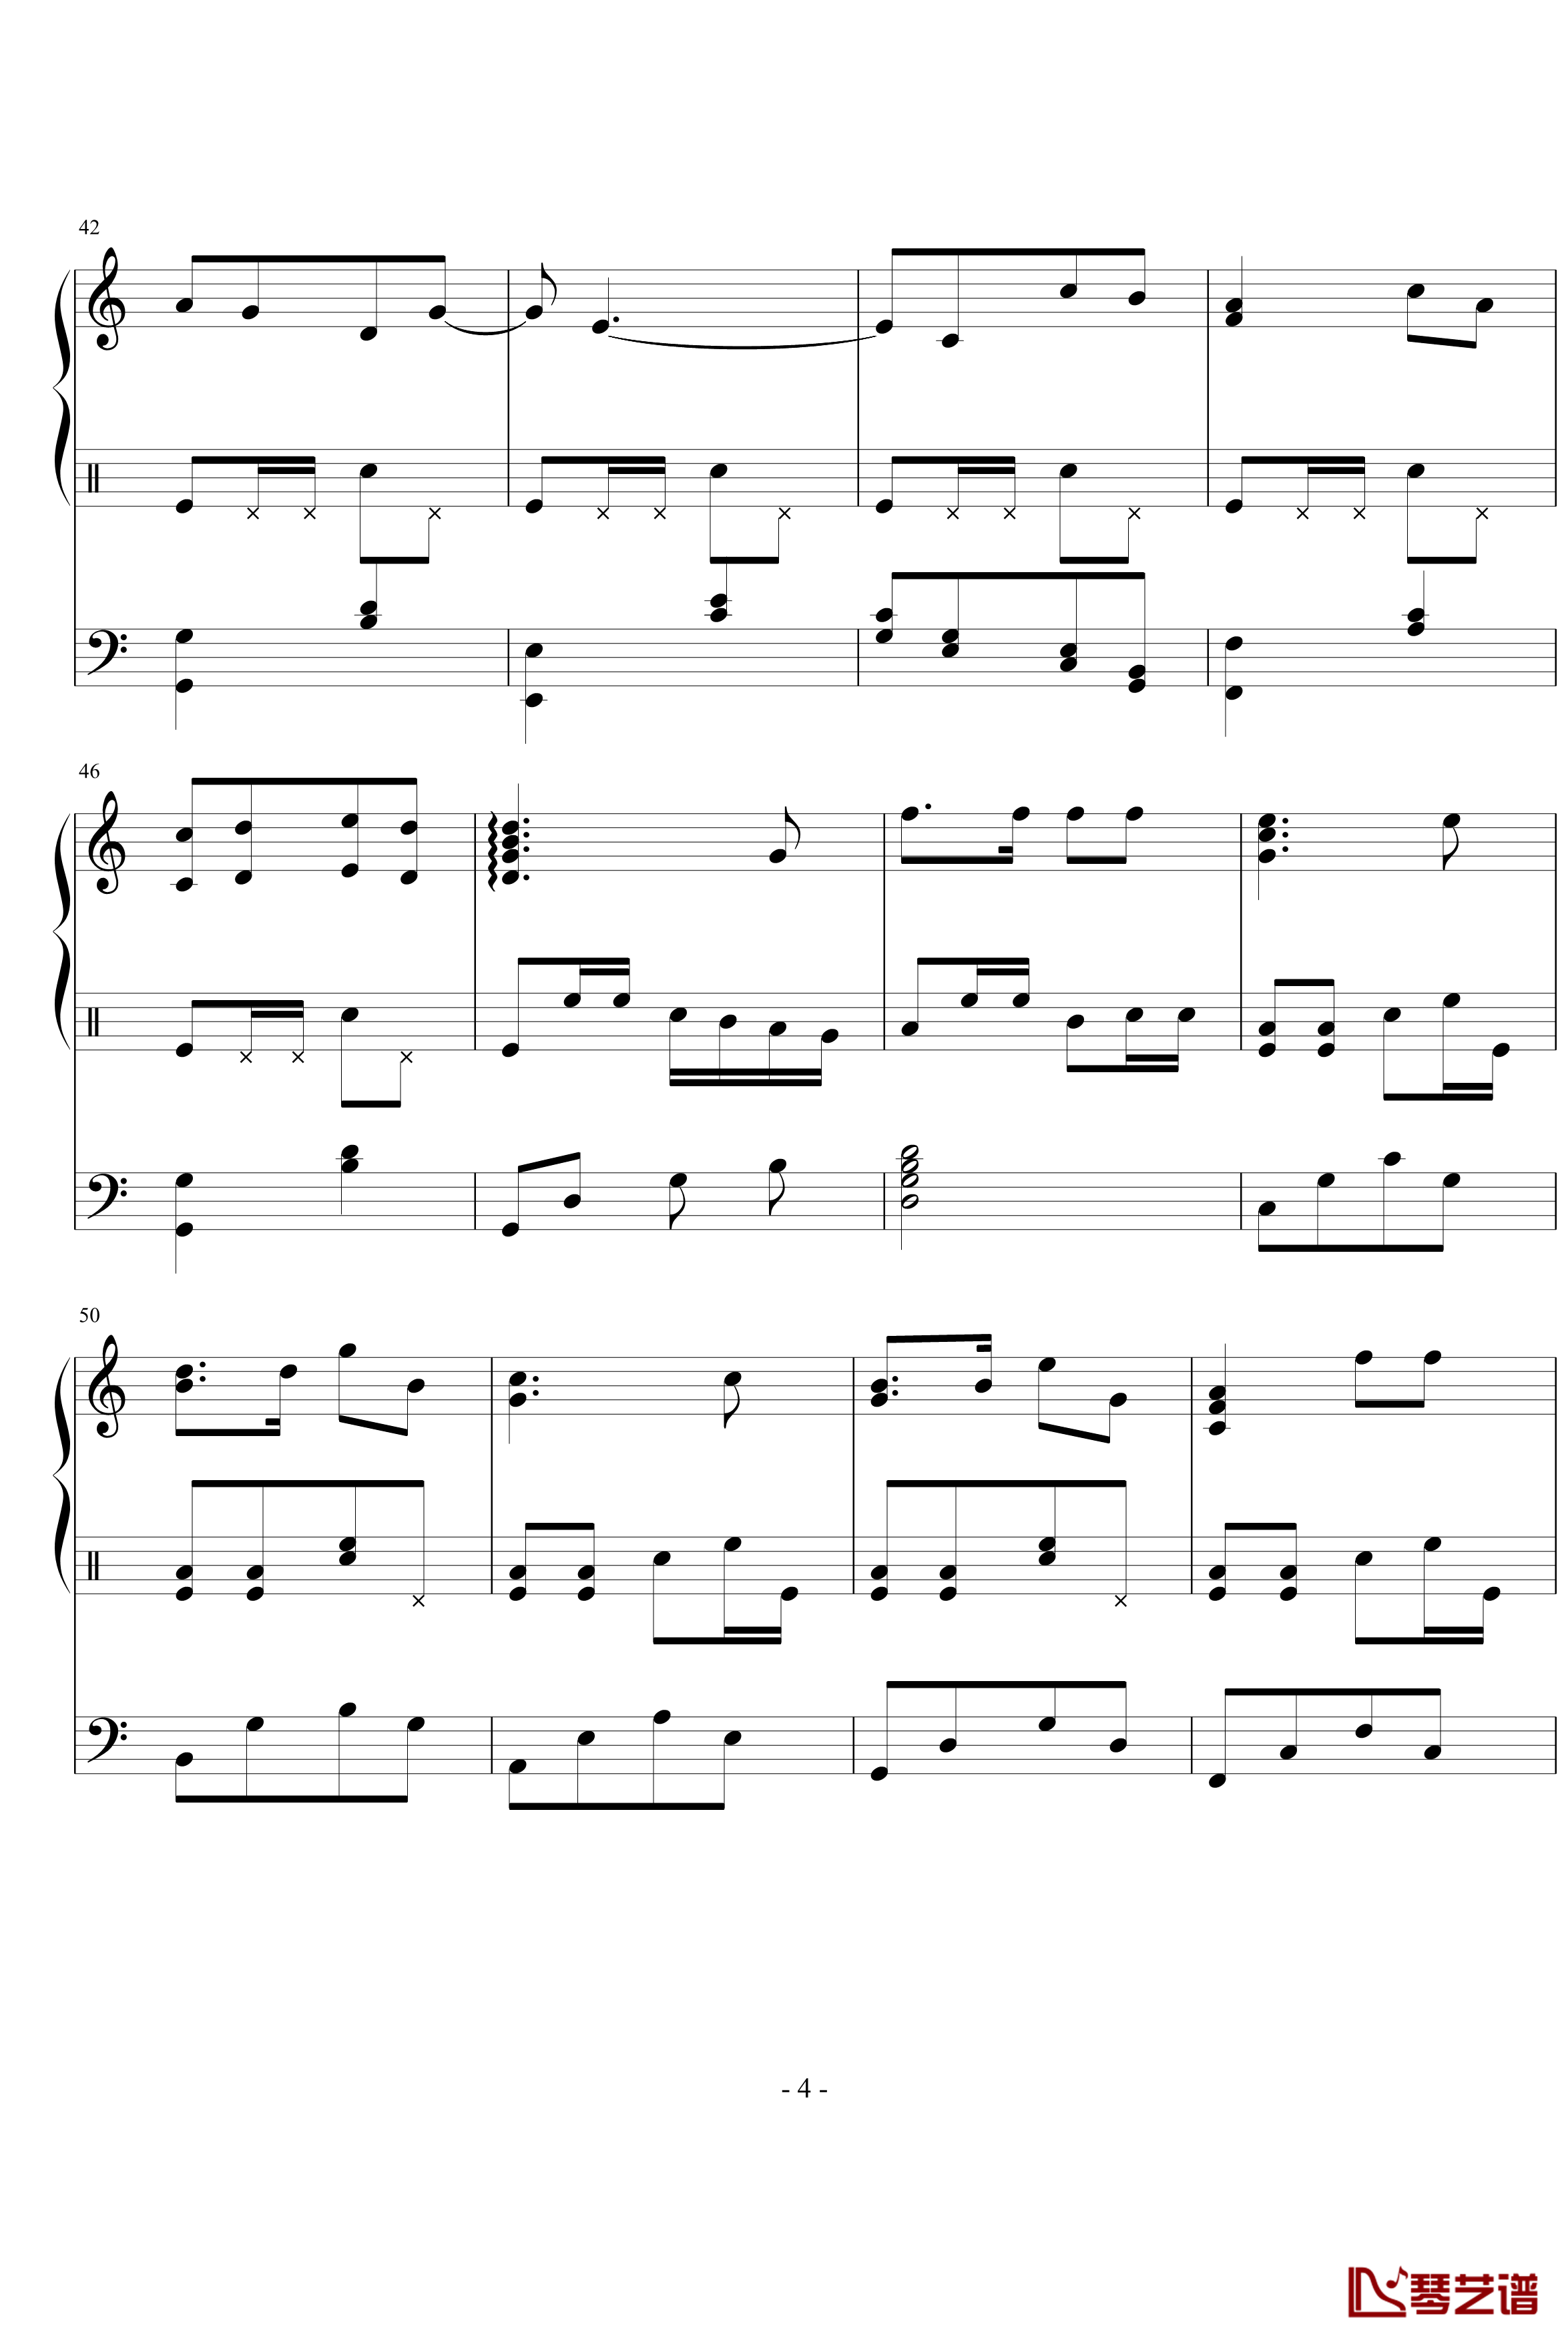 星月游乐园钢琴谱-199086hxy4